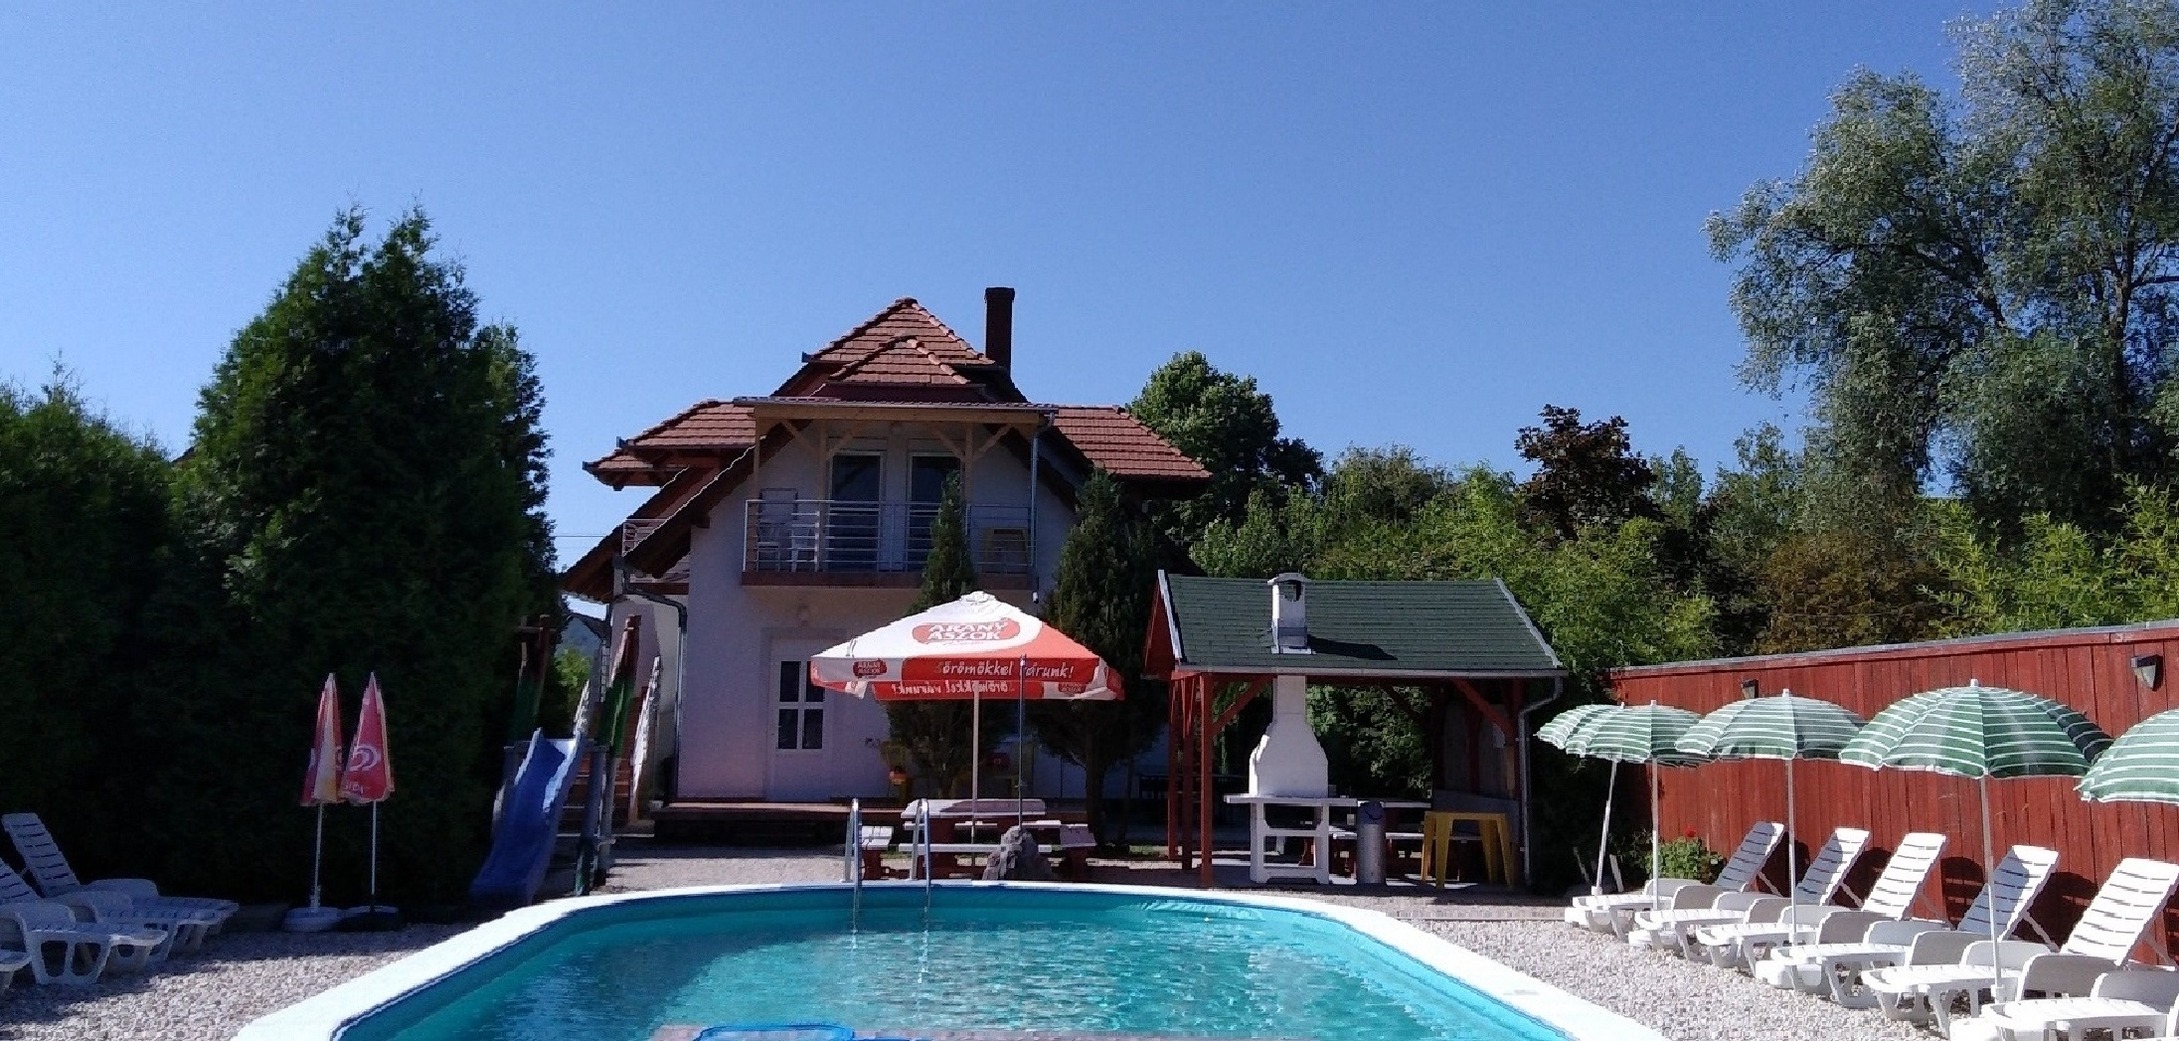 Ferienwohnung mit Pool für 2 Personen Ferienwohnung am Balaton Plattensee